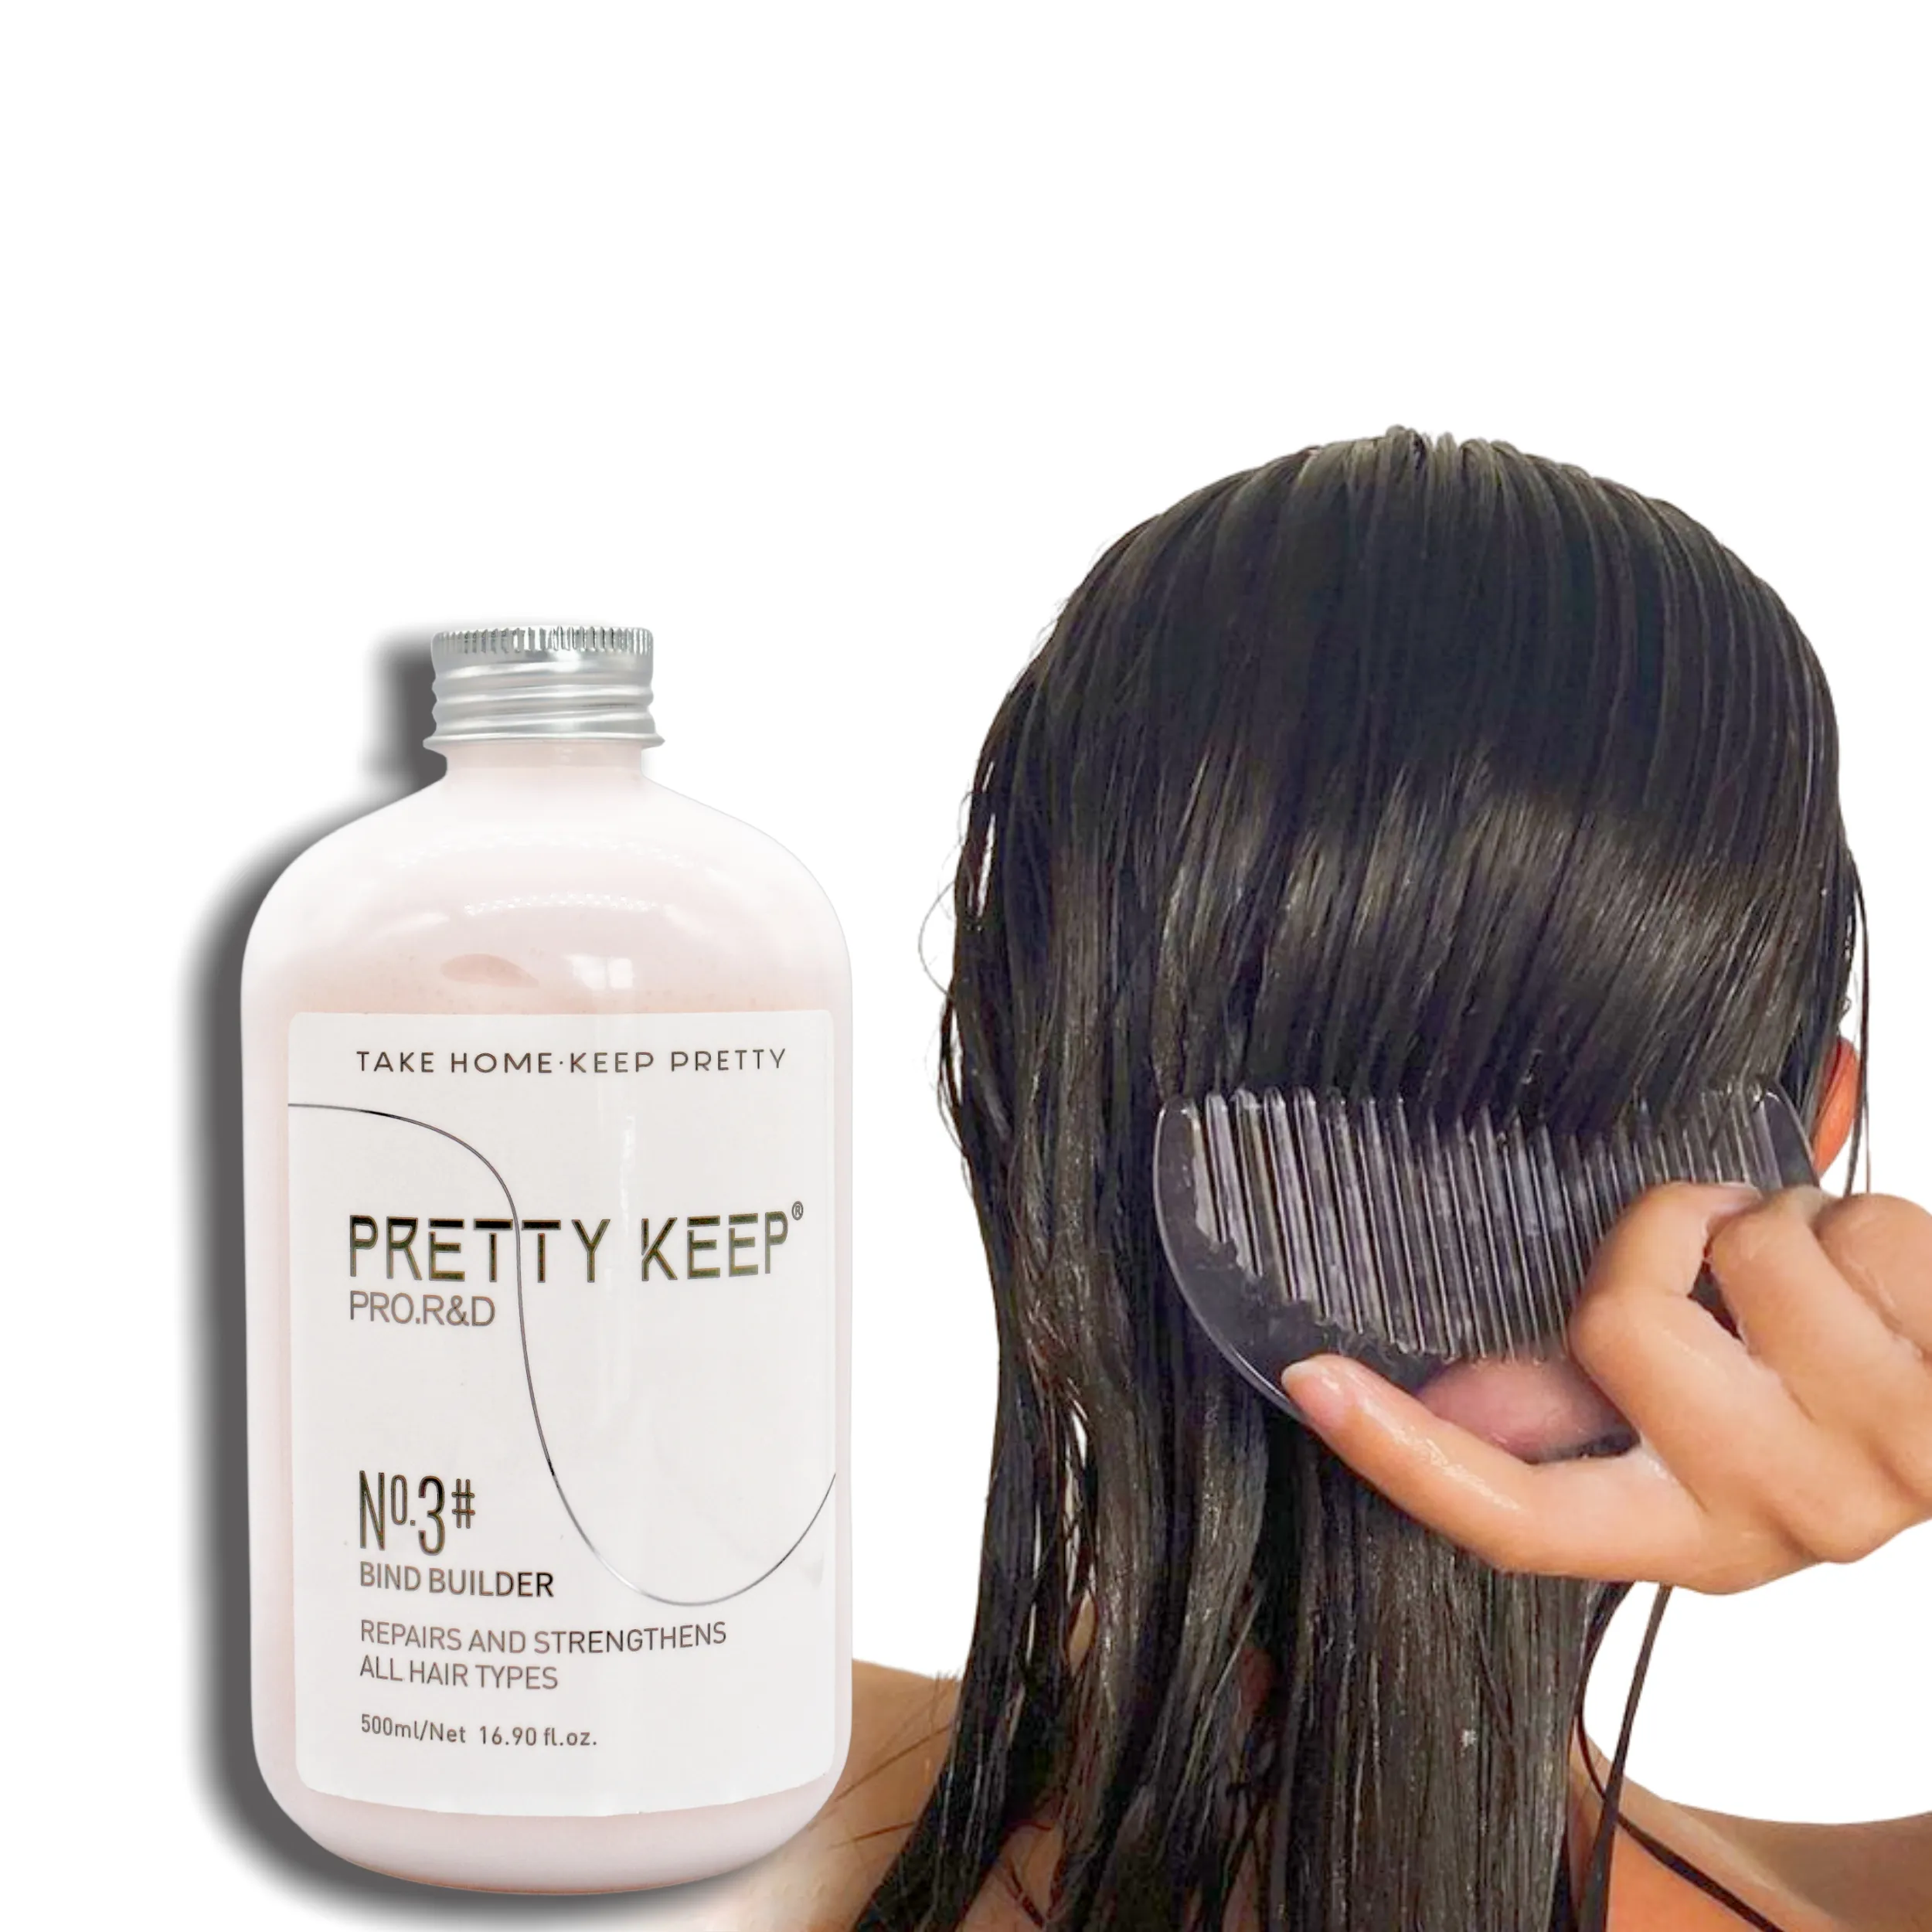 सभी प्रकार के बालों के लिए प्रीमियर प्री-शैम्पू हेयर स्ट्रेंथनिंग मास्क ट्रीटमेंट बॉन्ड रिपेयर स्मूथ क्रीम मास्क